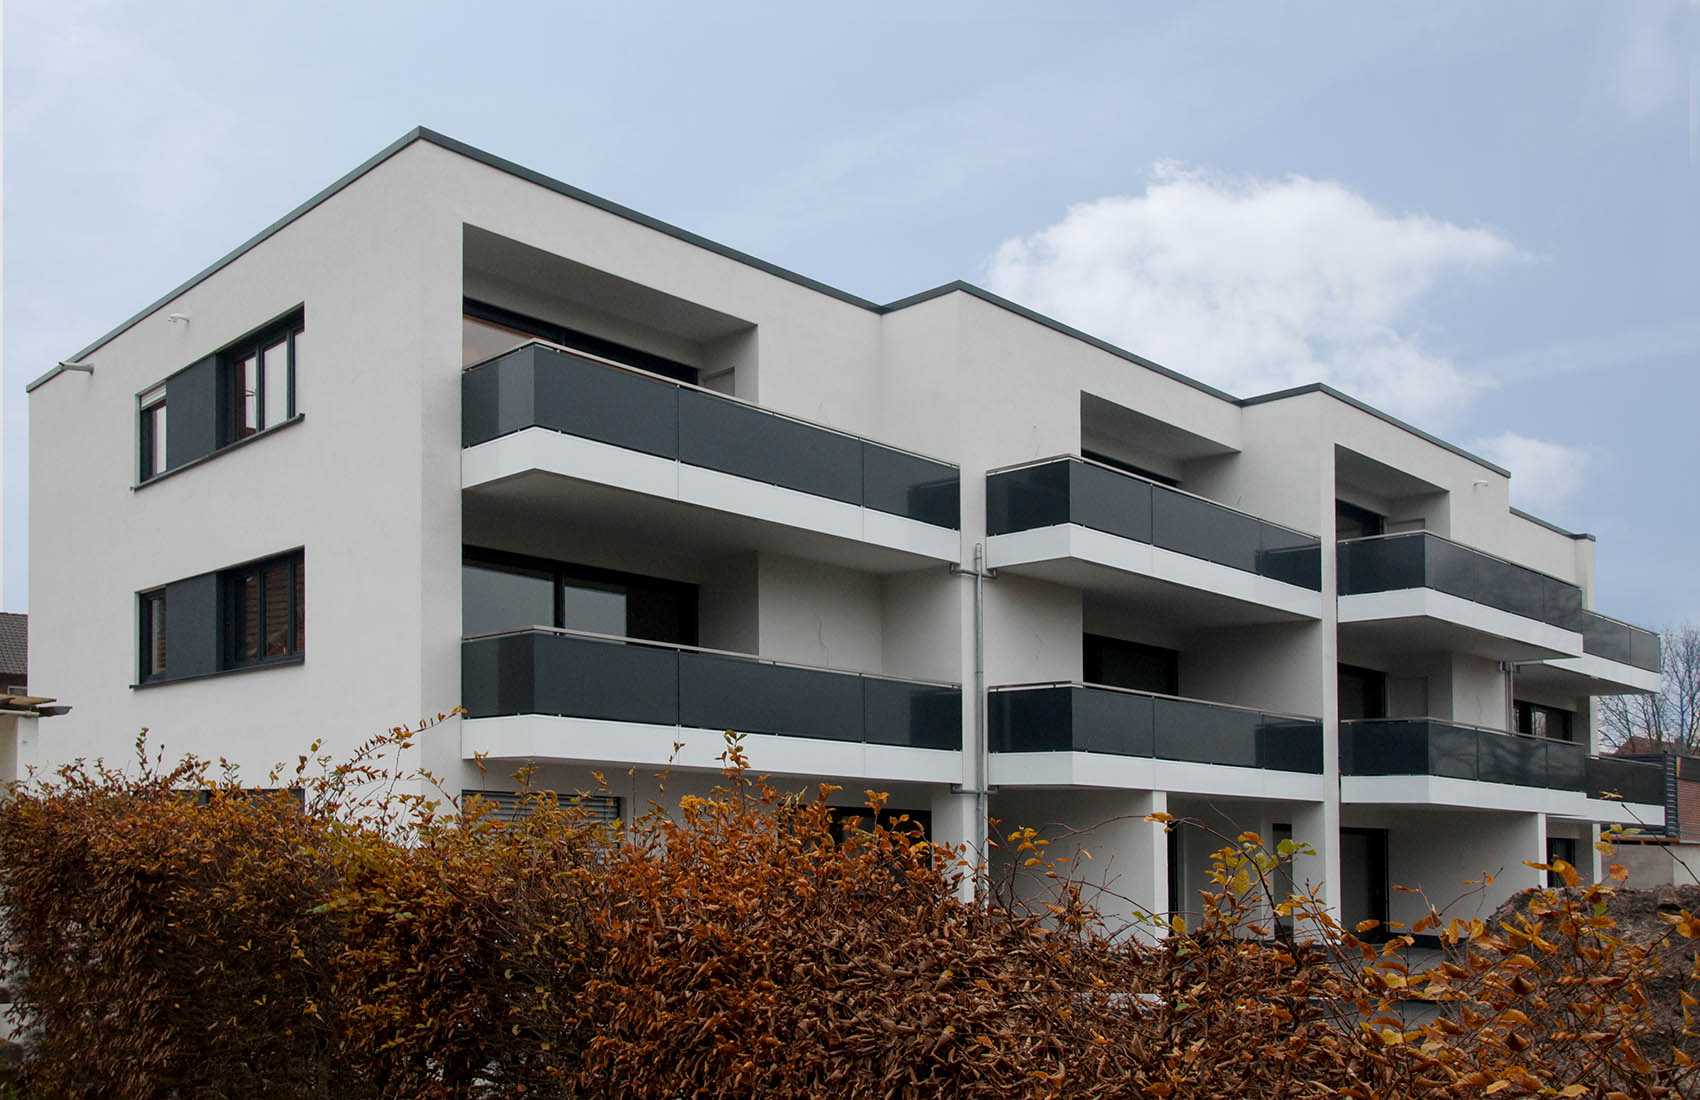 Neubau mit moderner Putzfassade in Niedersachsen | Wohnarchitektur